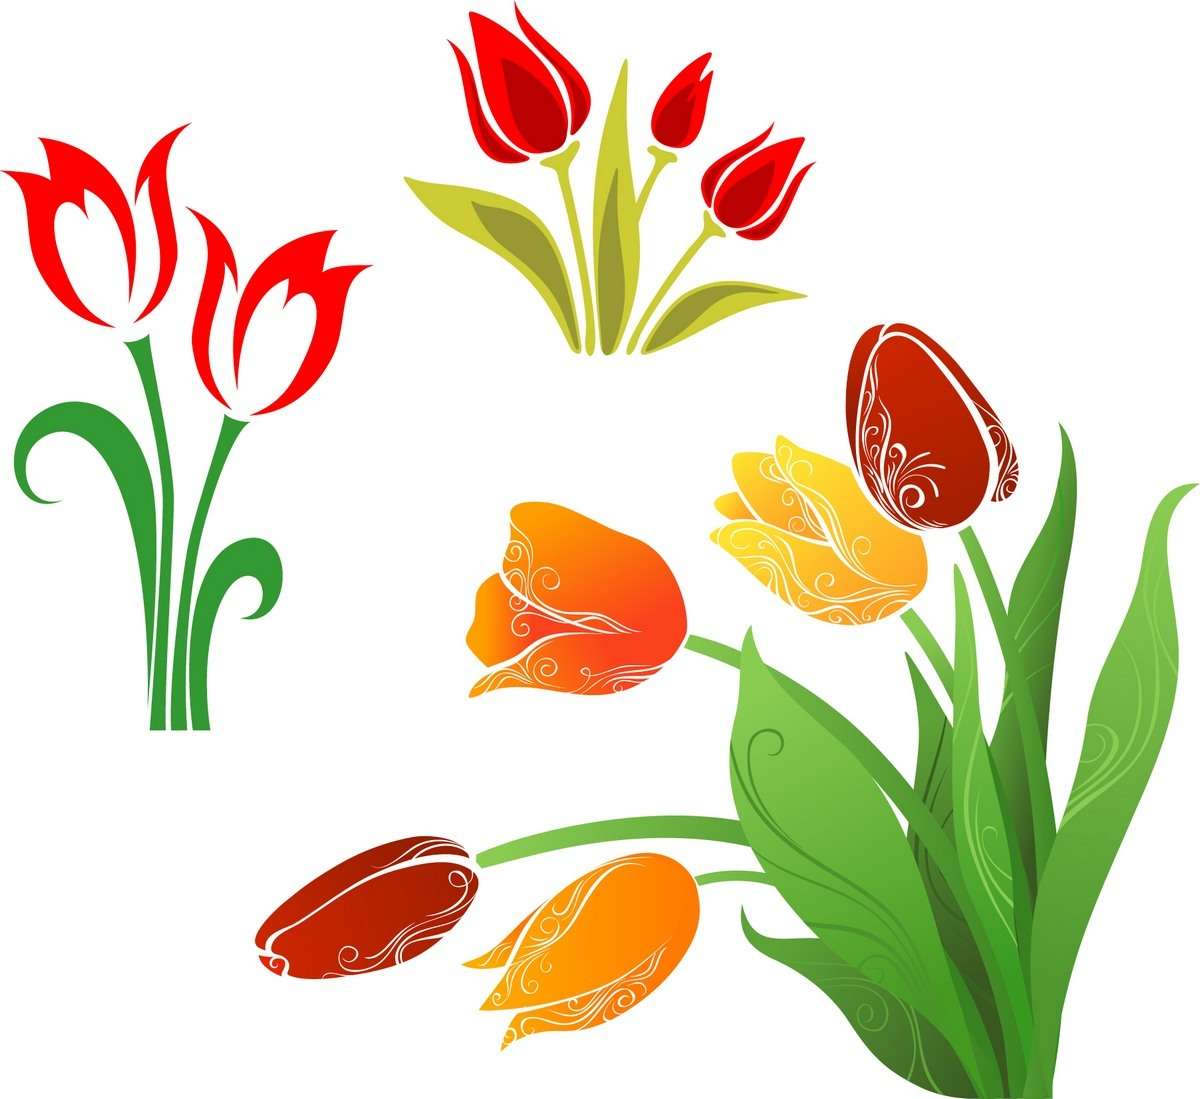 Flower, Tulip 01